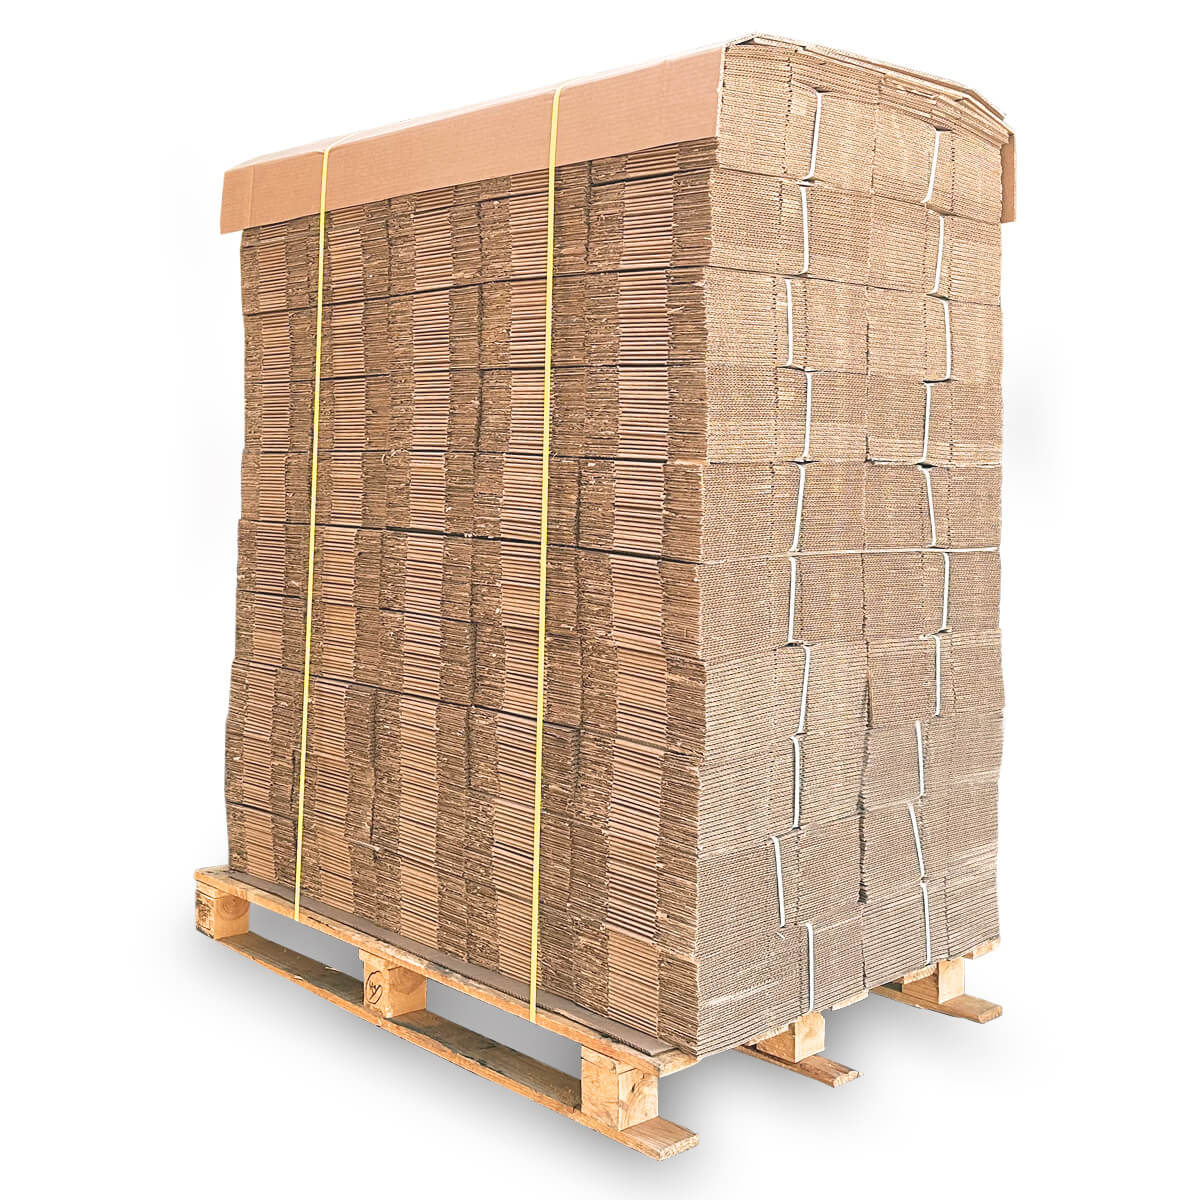  Palets cajas de carton automontable A1 160x110x110mm